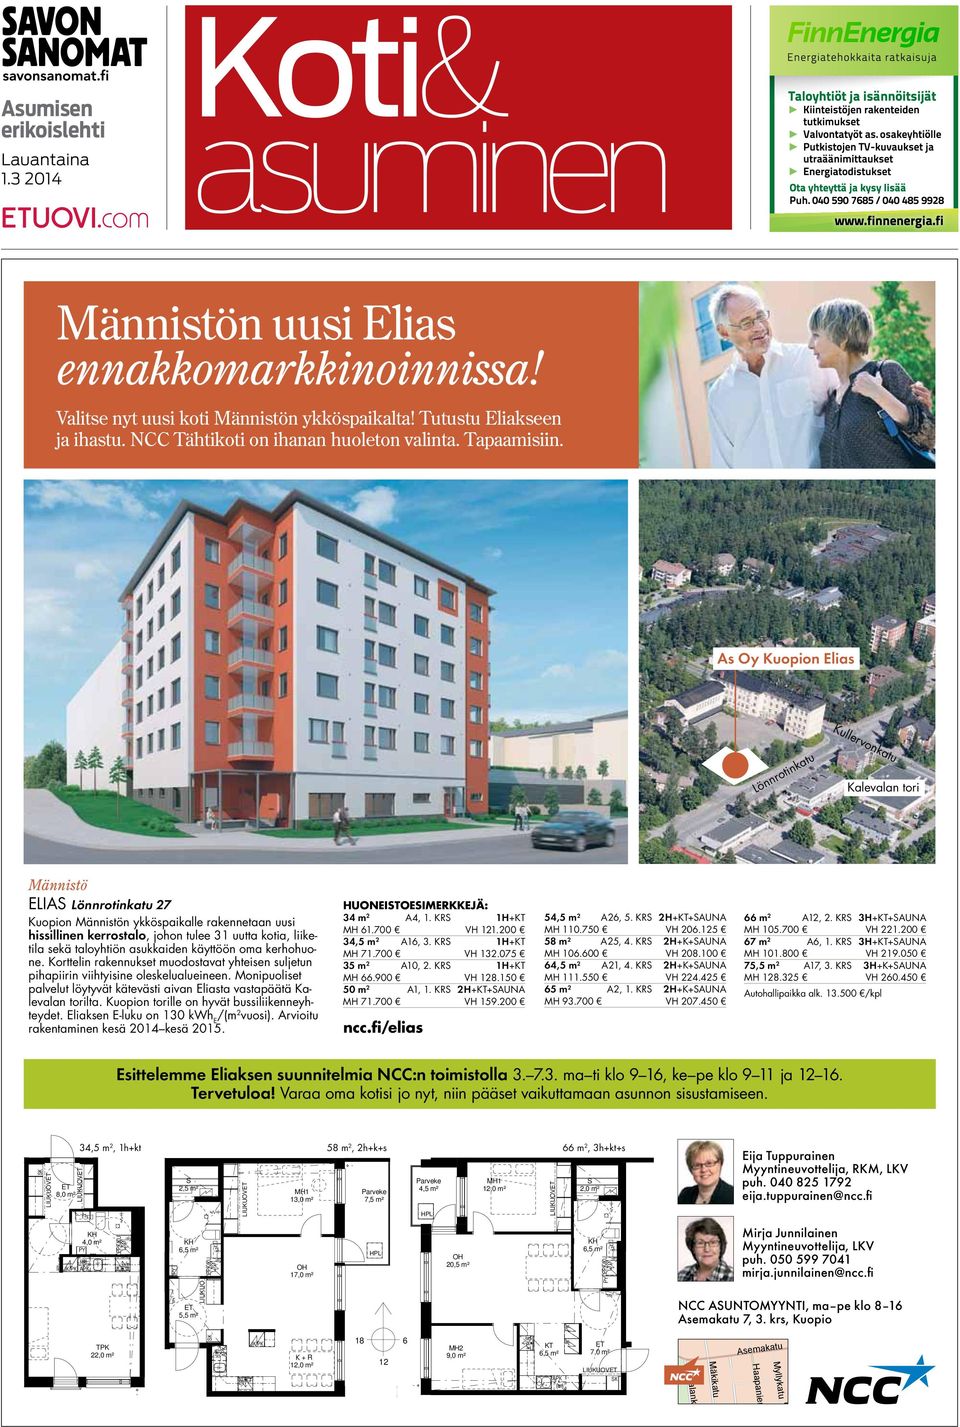 As Oy Kuopion Elias Lönnrotinkatu Kullervonkatu Kalevalan tori Männistö ELIAS Lönnrotinkatu 27 Kuopion Männistön ykköspaikalle rakennetaan uusi hissillinen kerrostalo, johon tulee 31 uutta kotia,